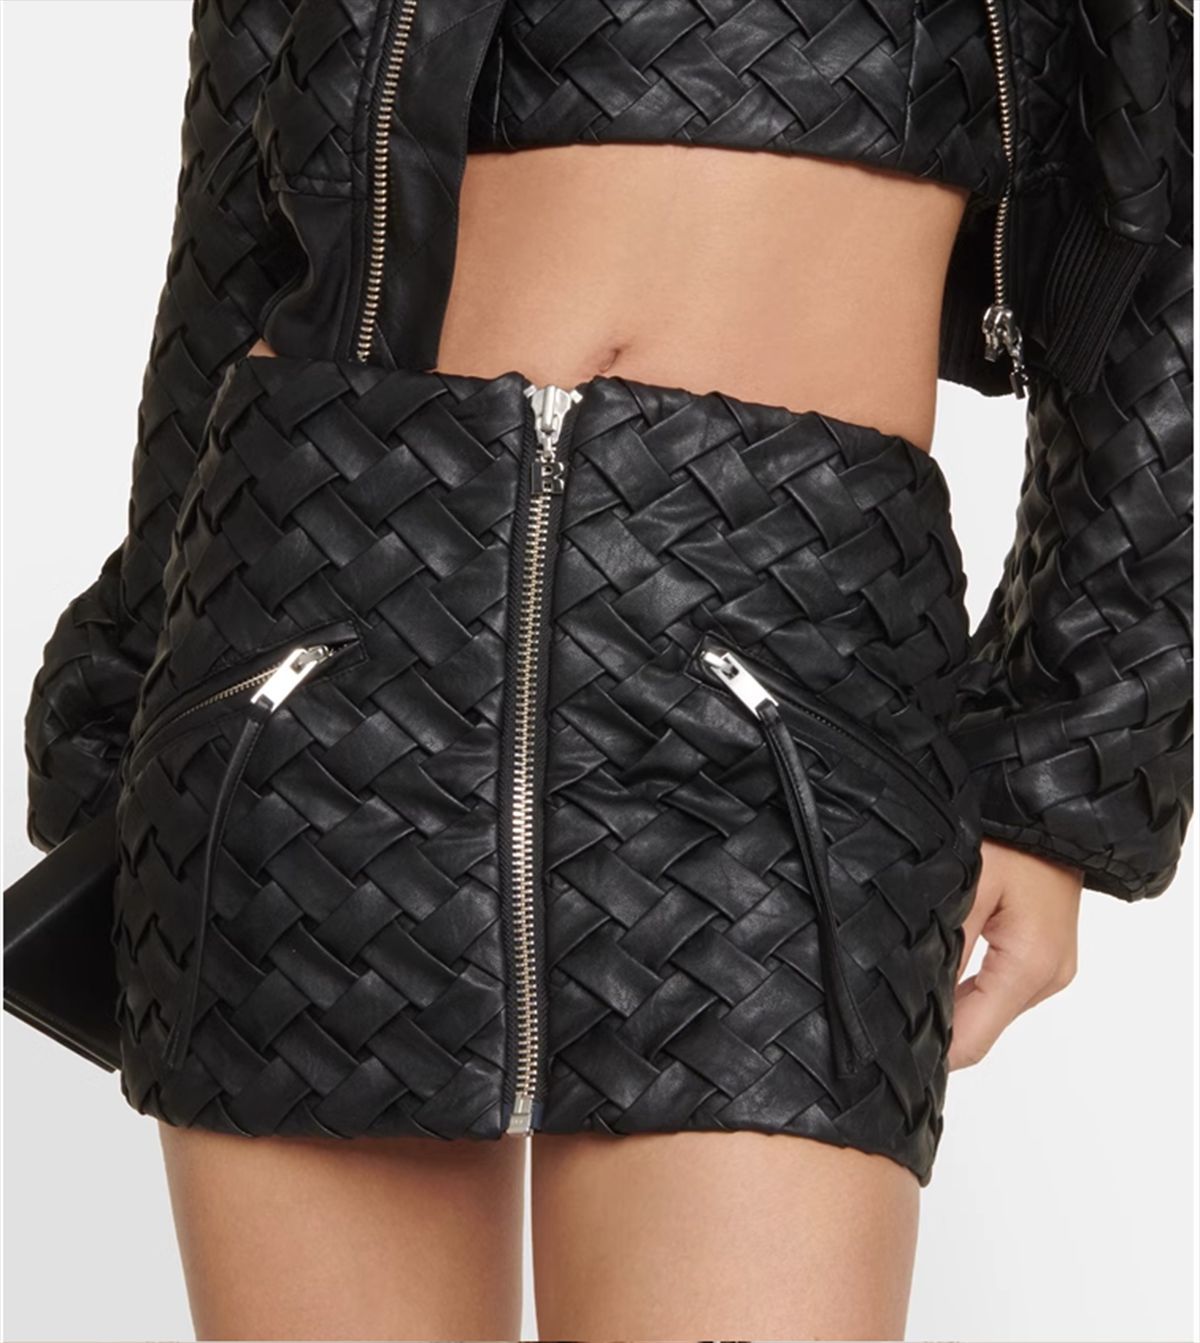 Niche Romantic Black Woven Design Texture Zipper Flight Suit Short Coat Mini Sheath Skirt Outfit